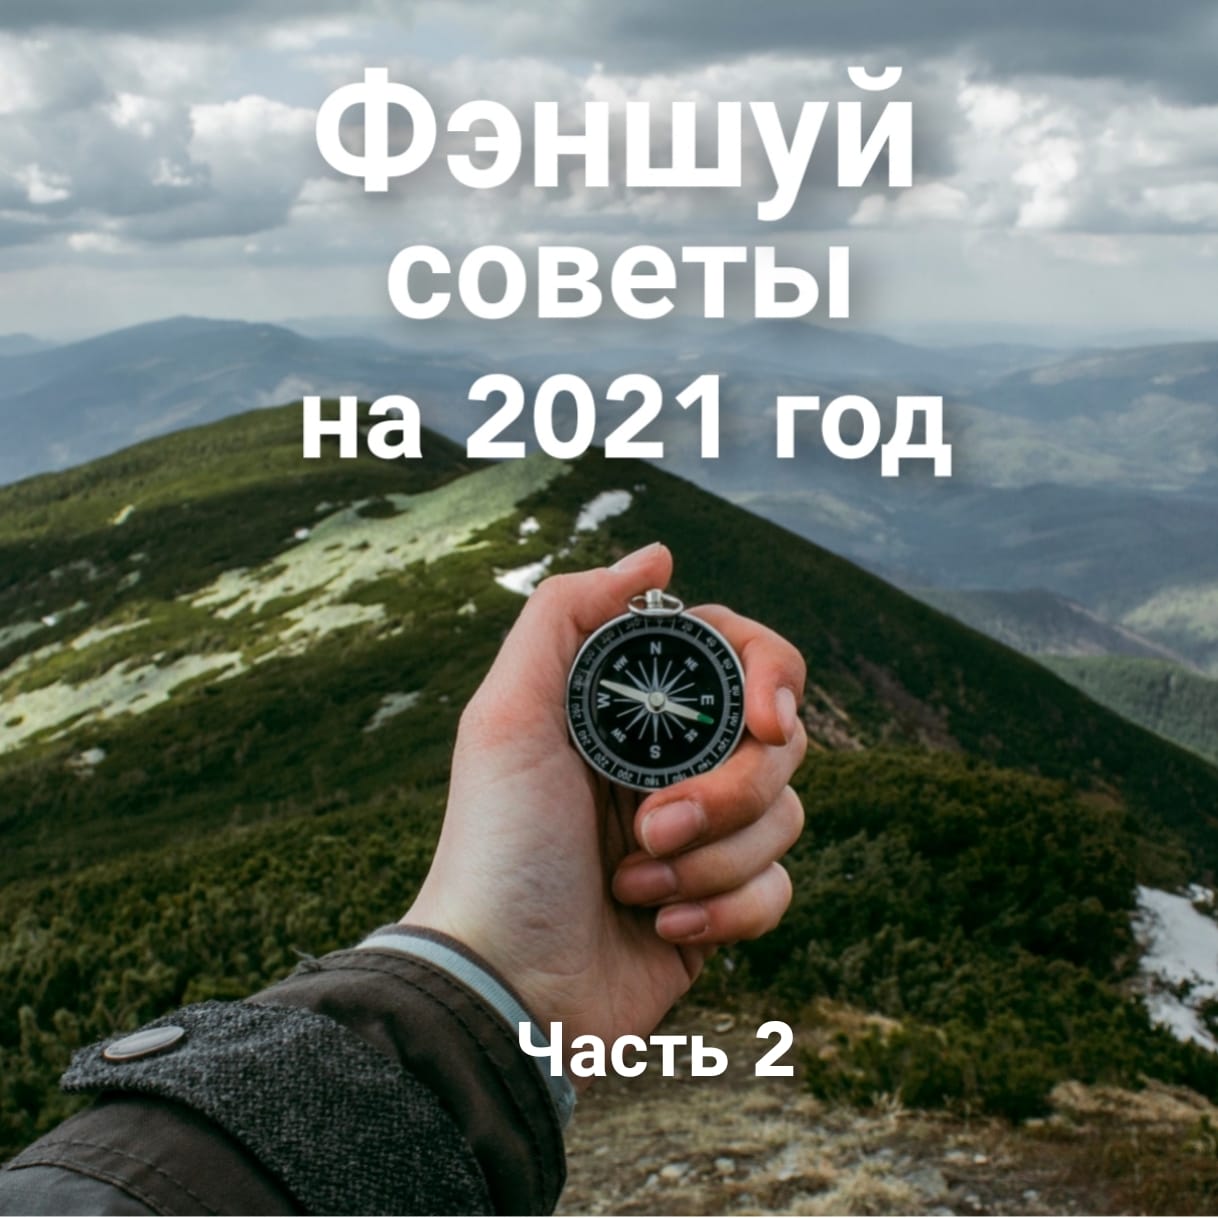 Фэншуй-советы 2021 Институт Фэншуй Fengshuimaster.ru